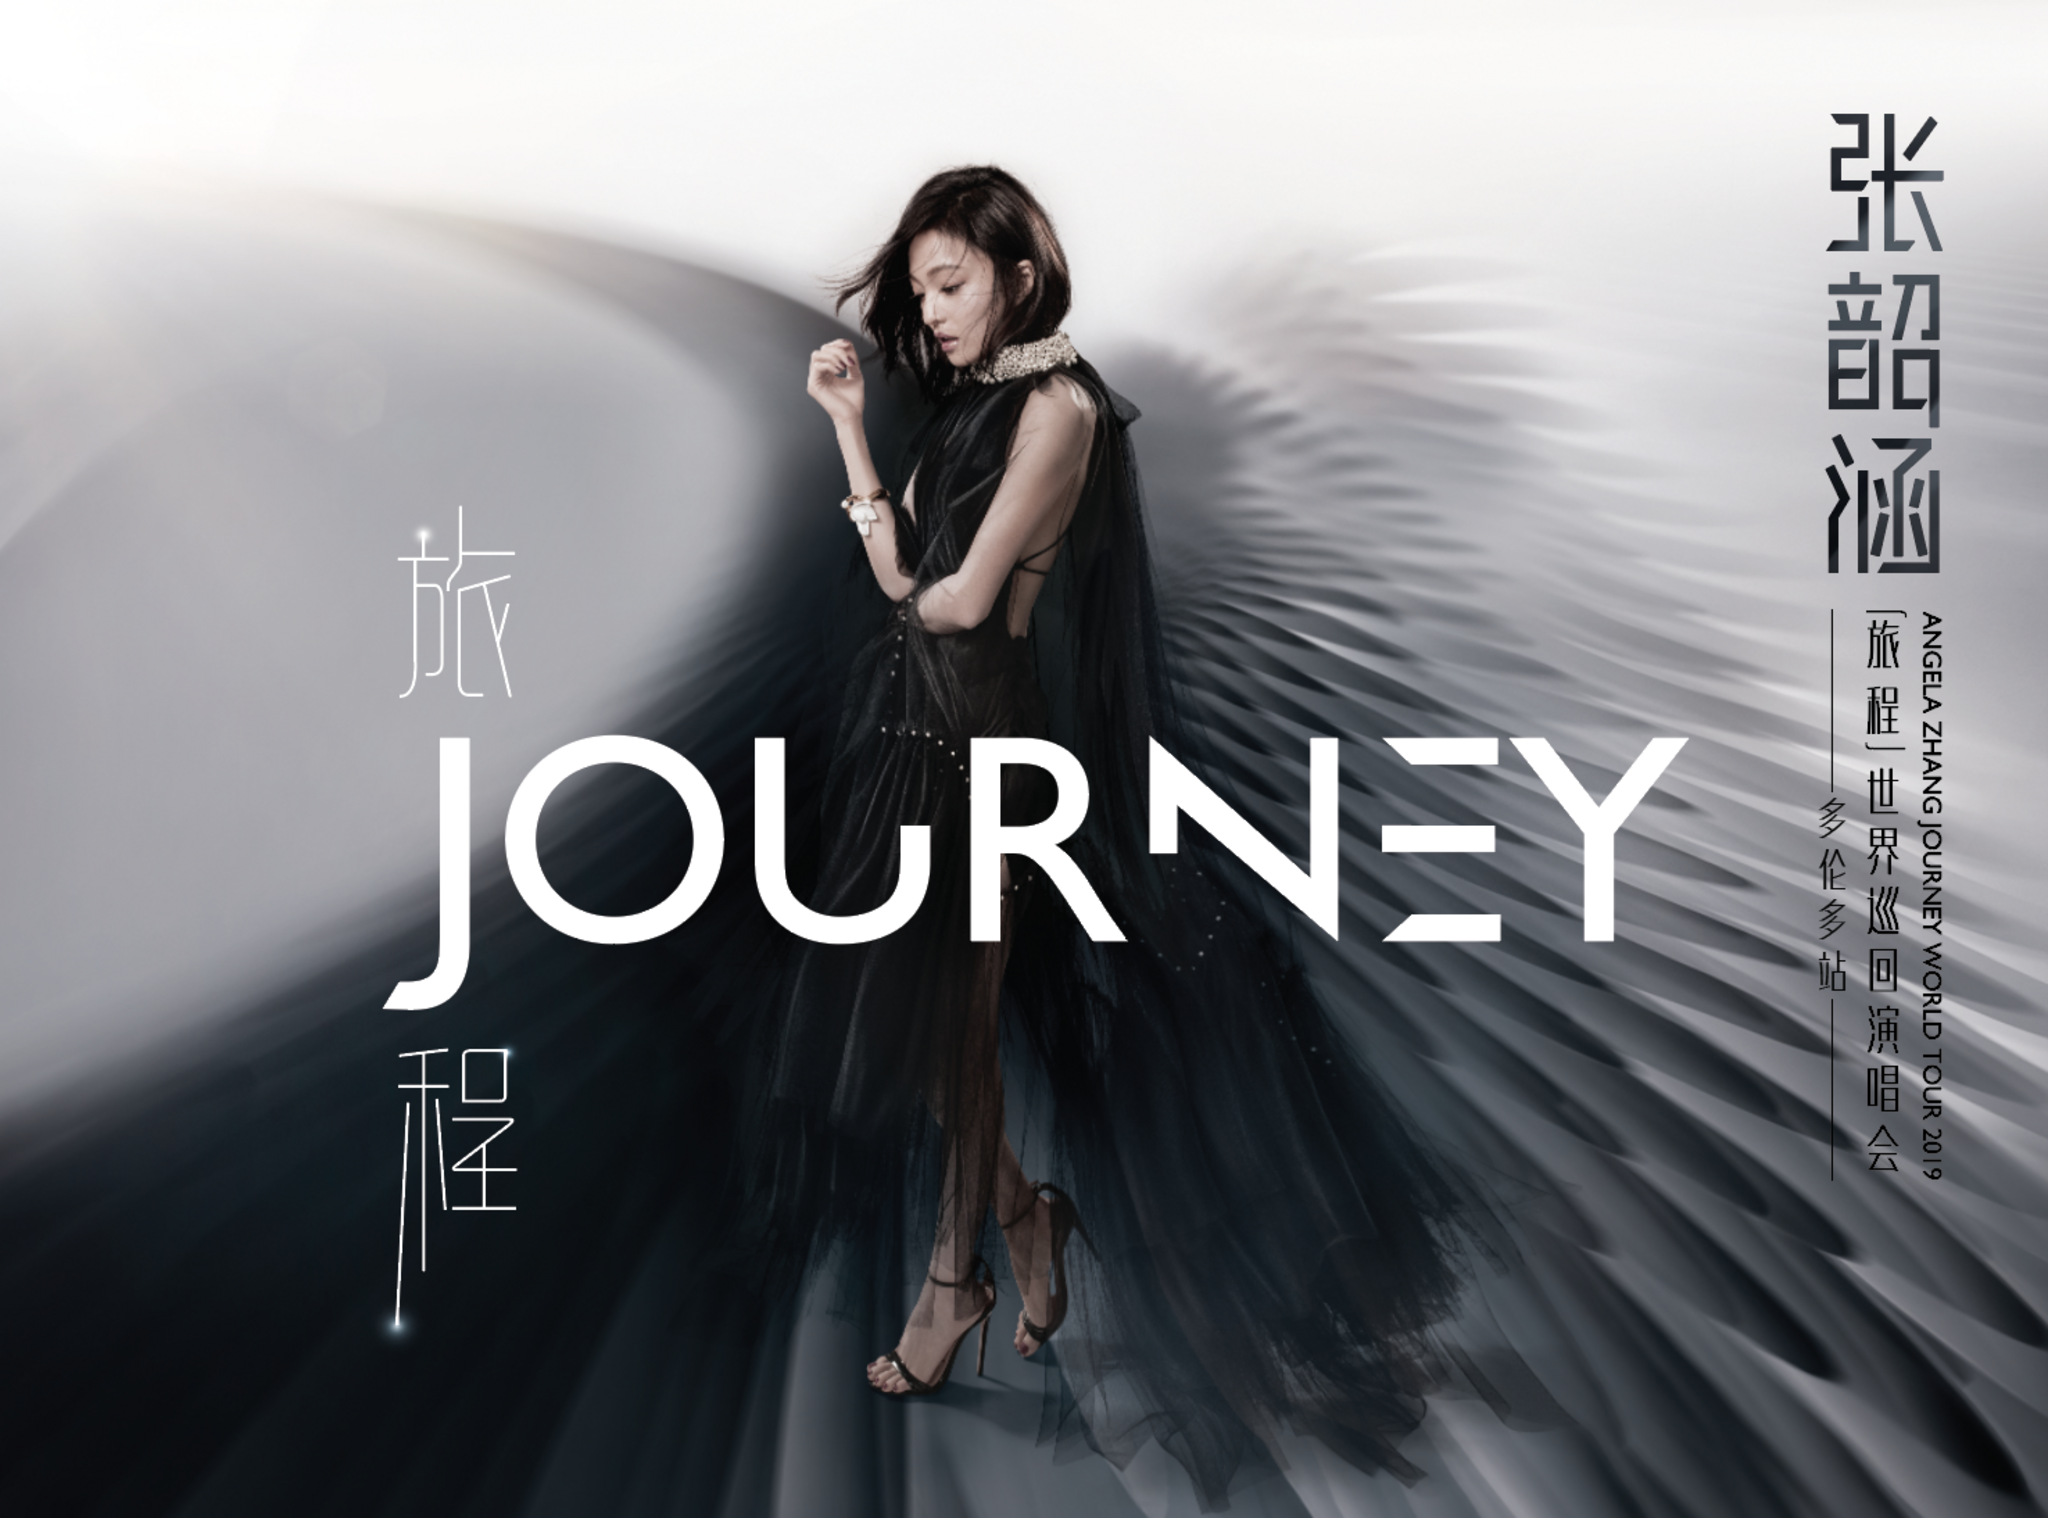 lagu angela zhang journey